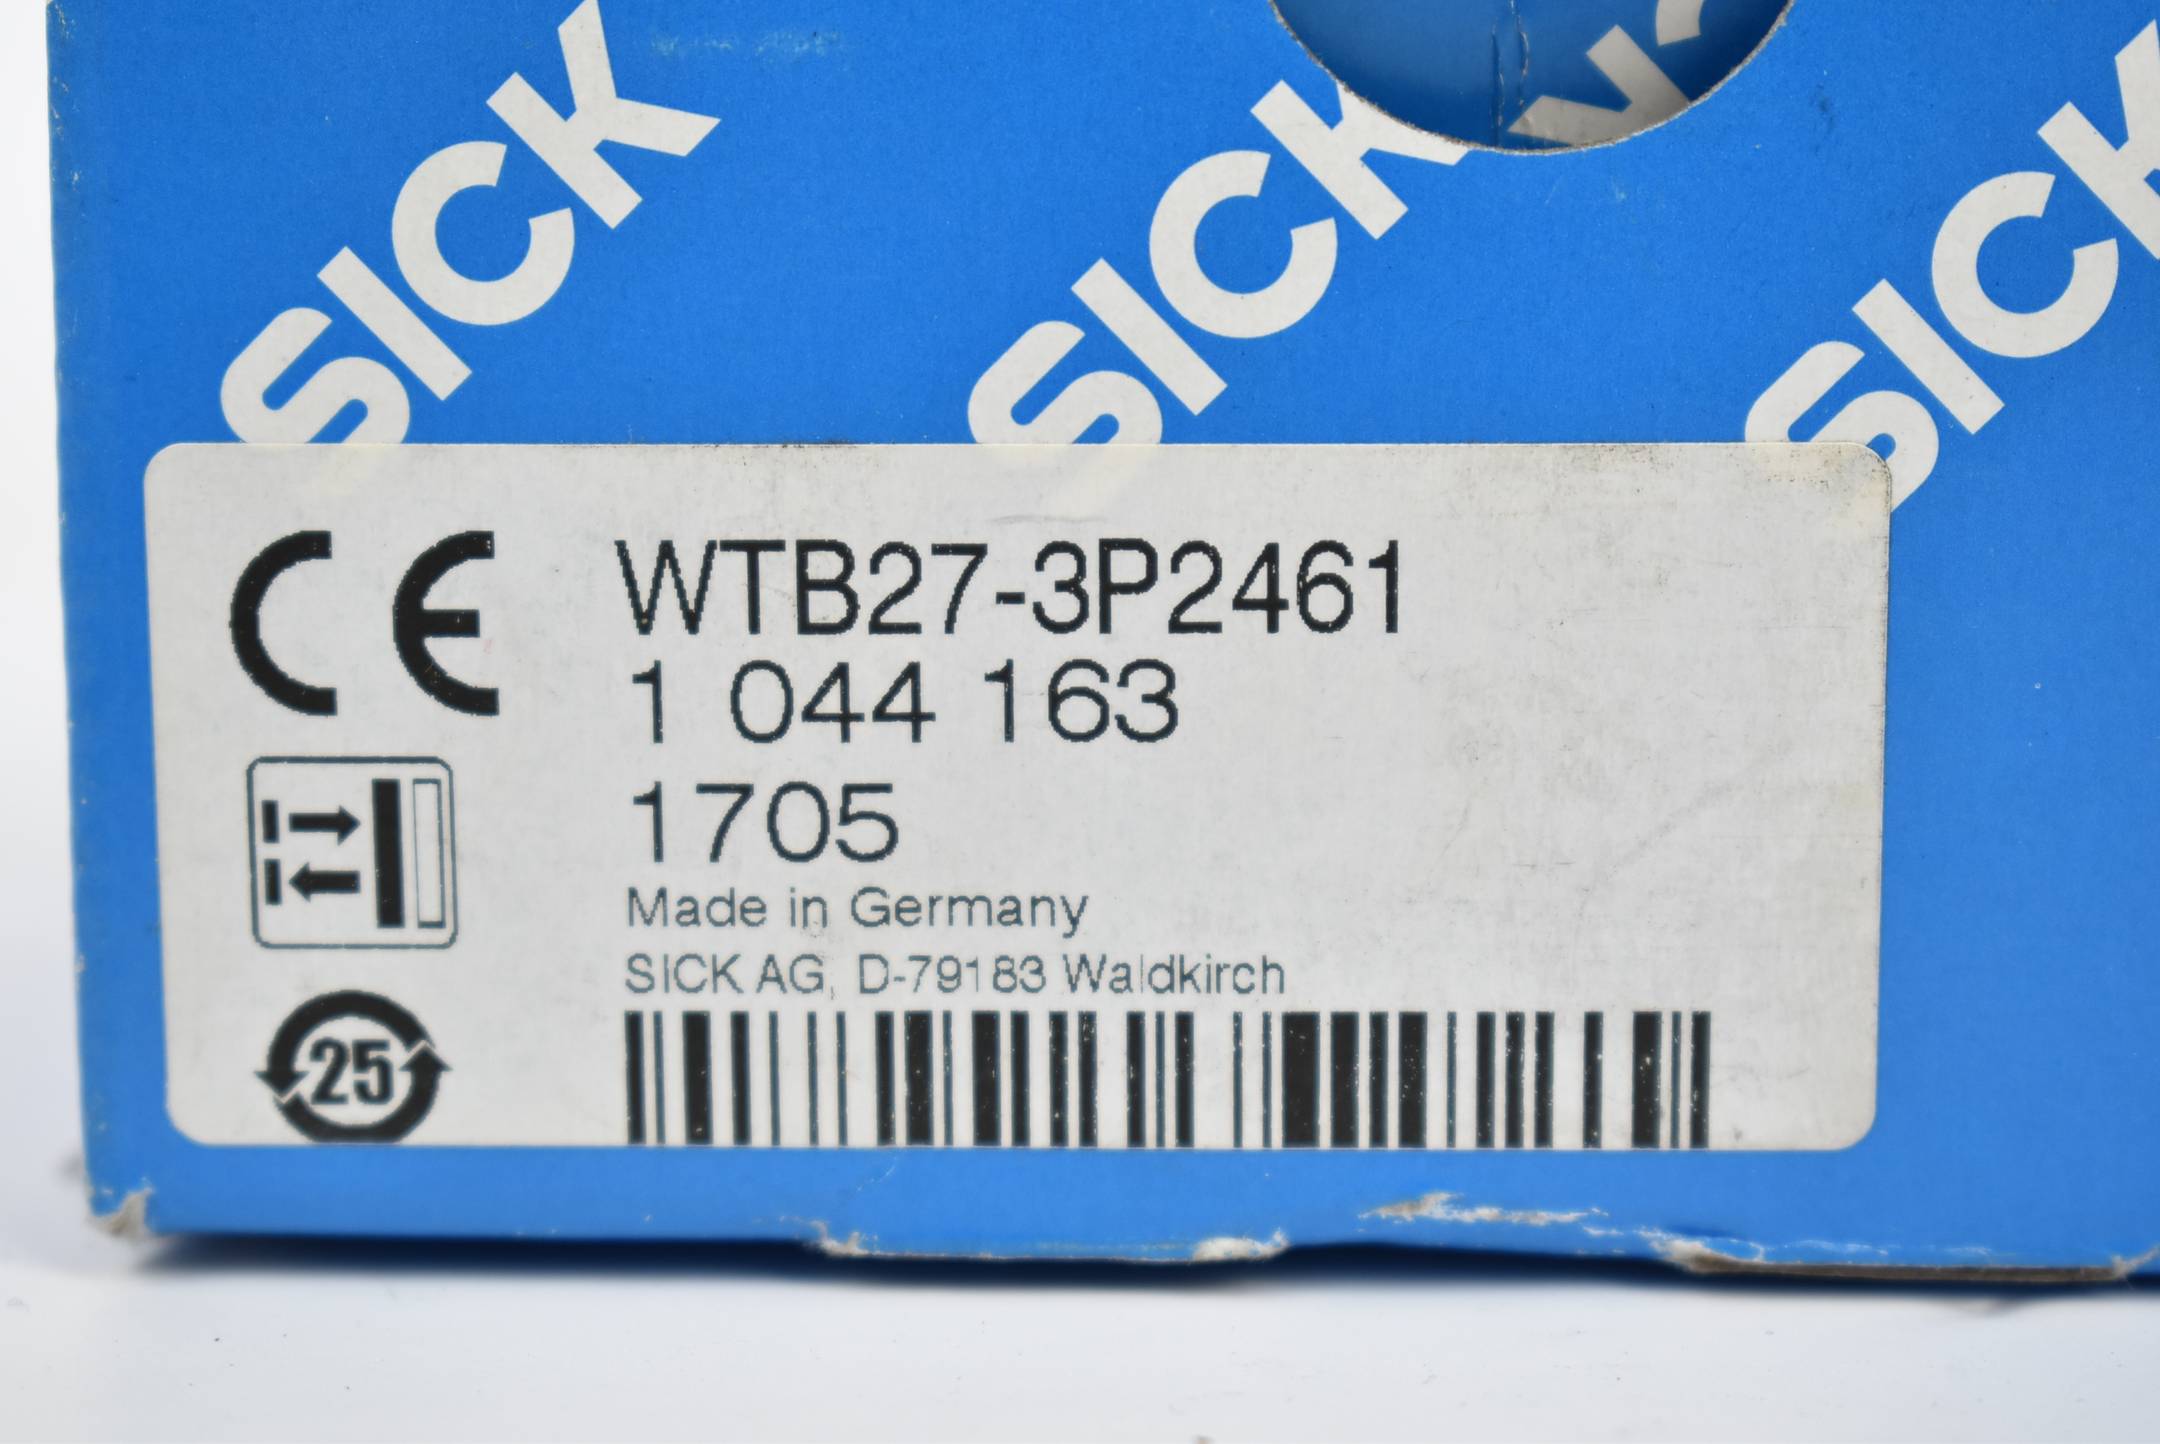 Sick Kompakt-Lichtschranke W27-3 WTB27-3P2461 ( 1044163 )